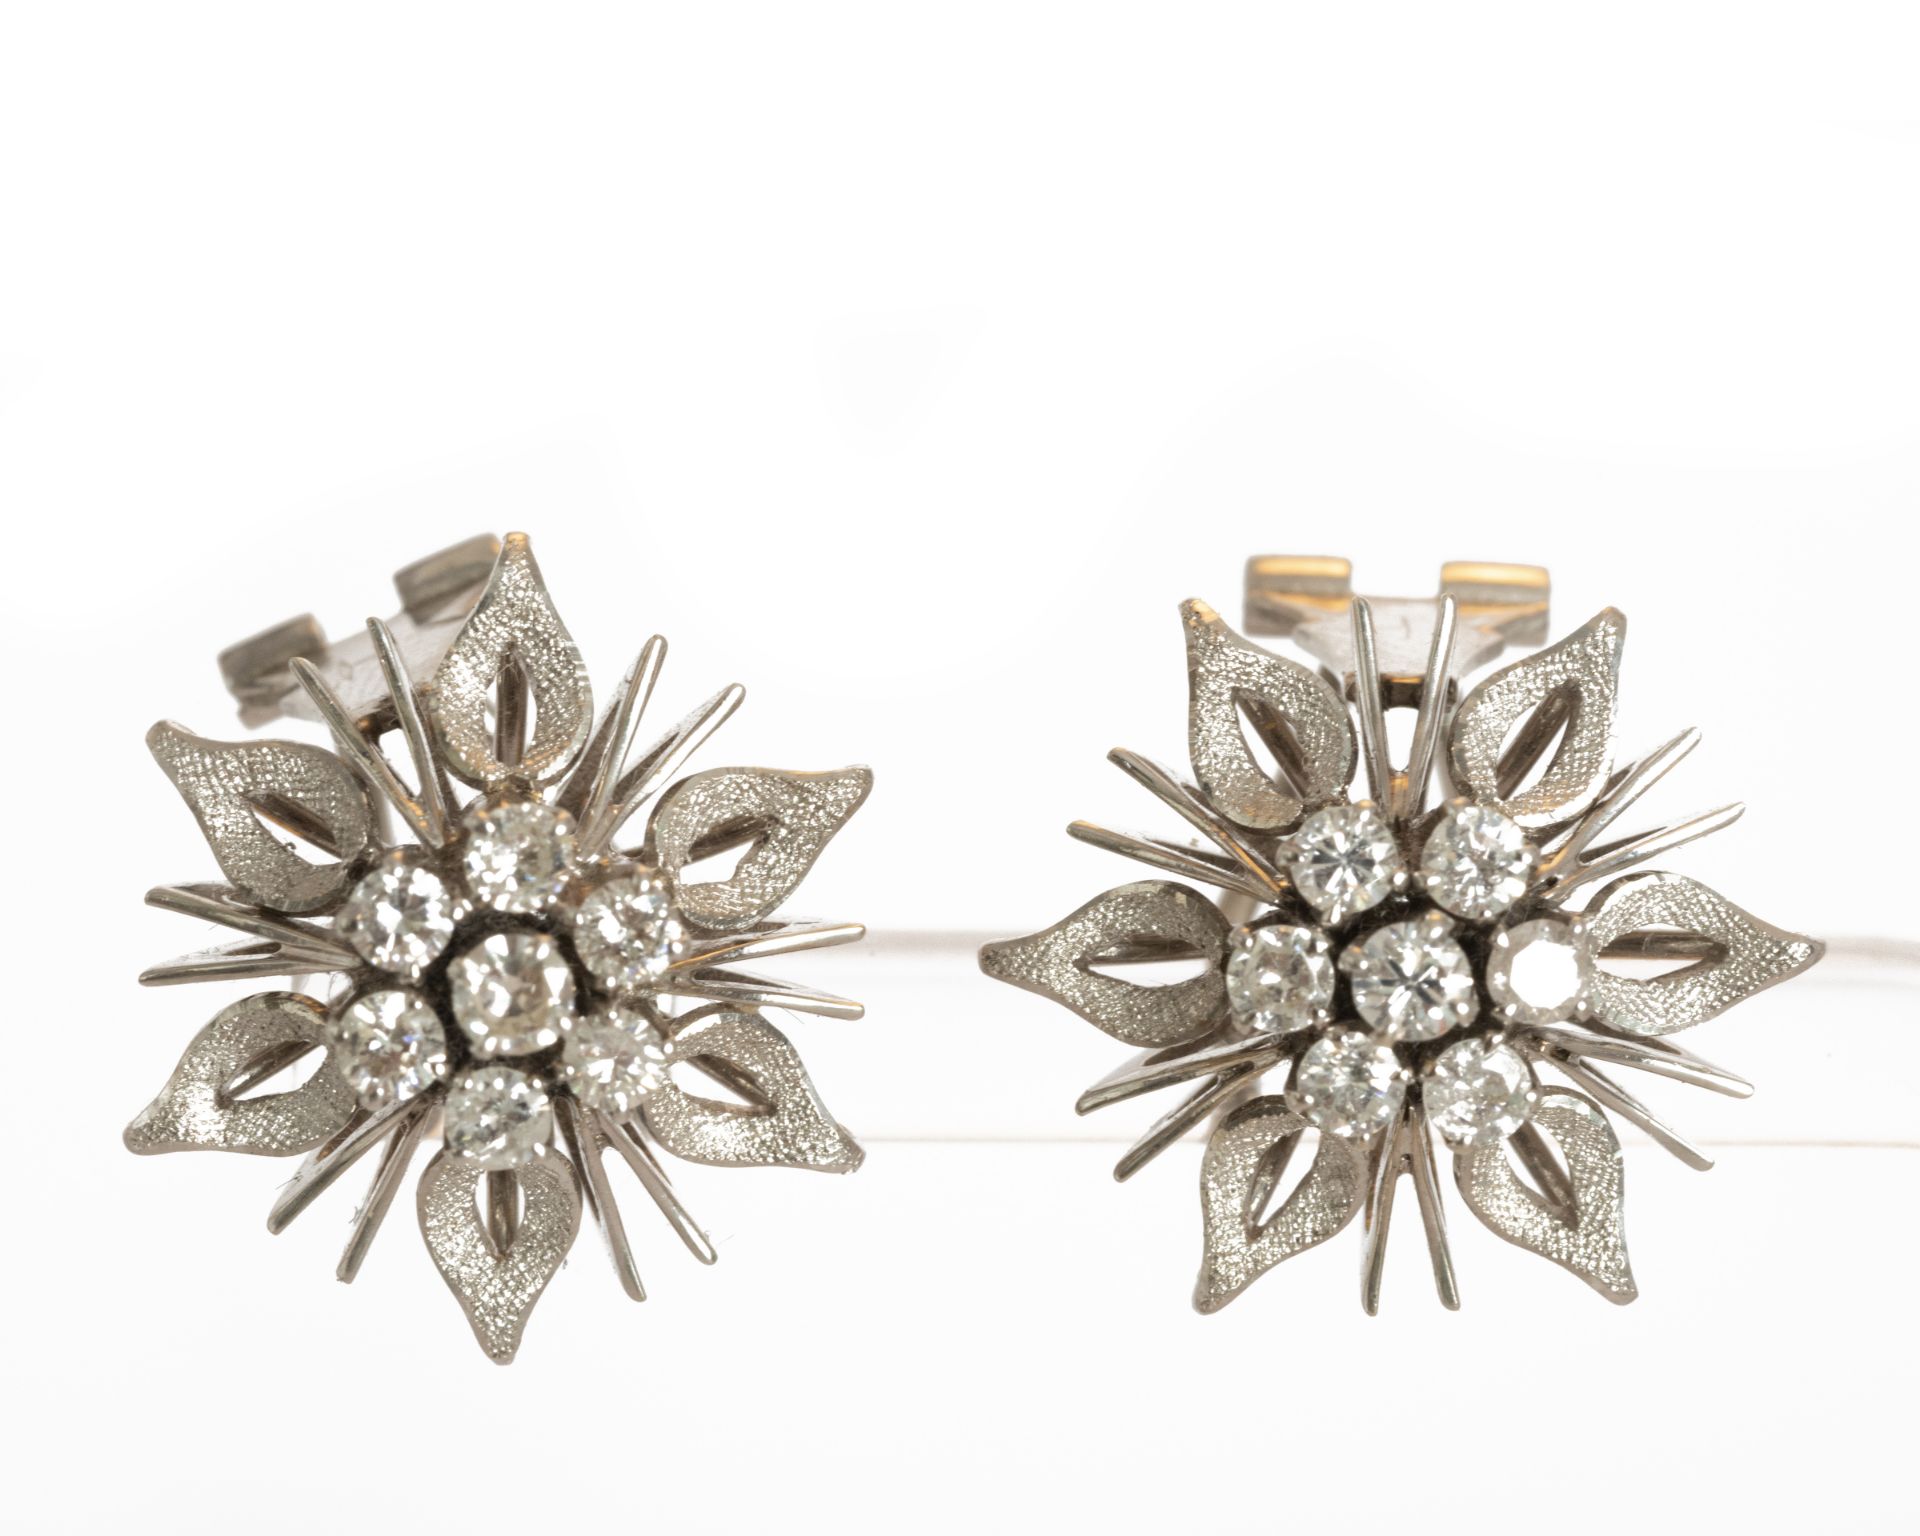 18kt flower-shaped earrings with diamonds